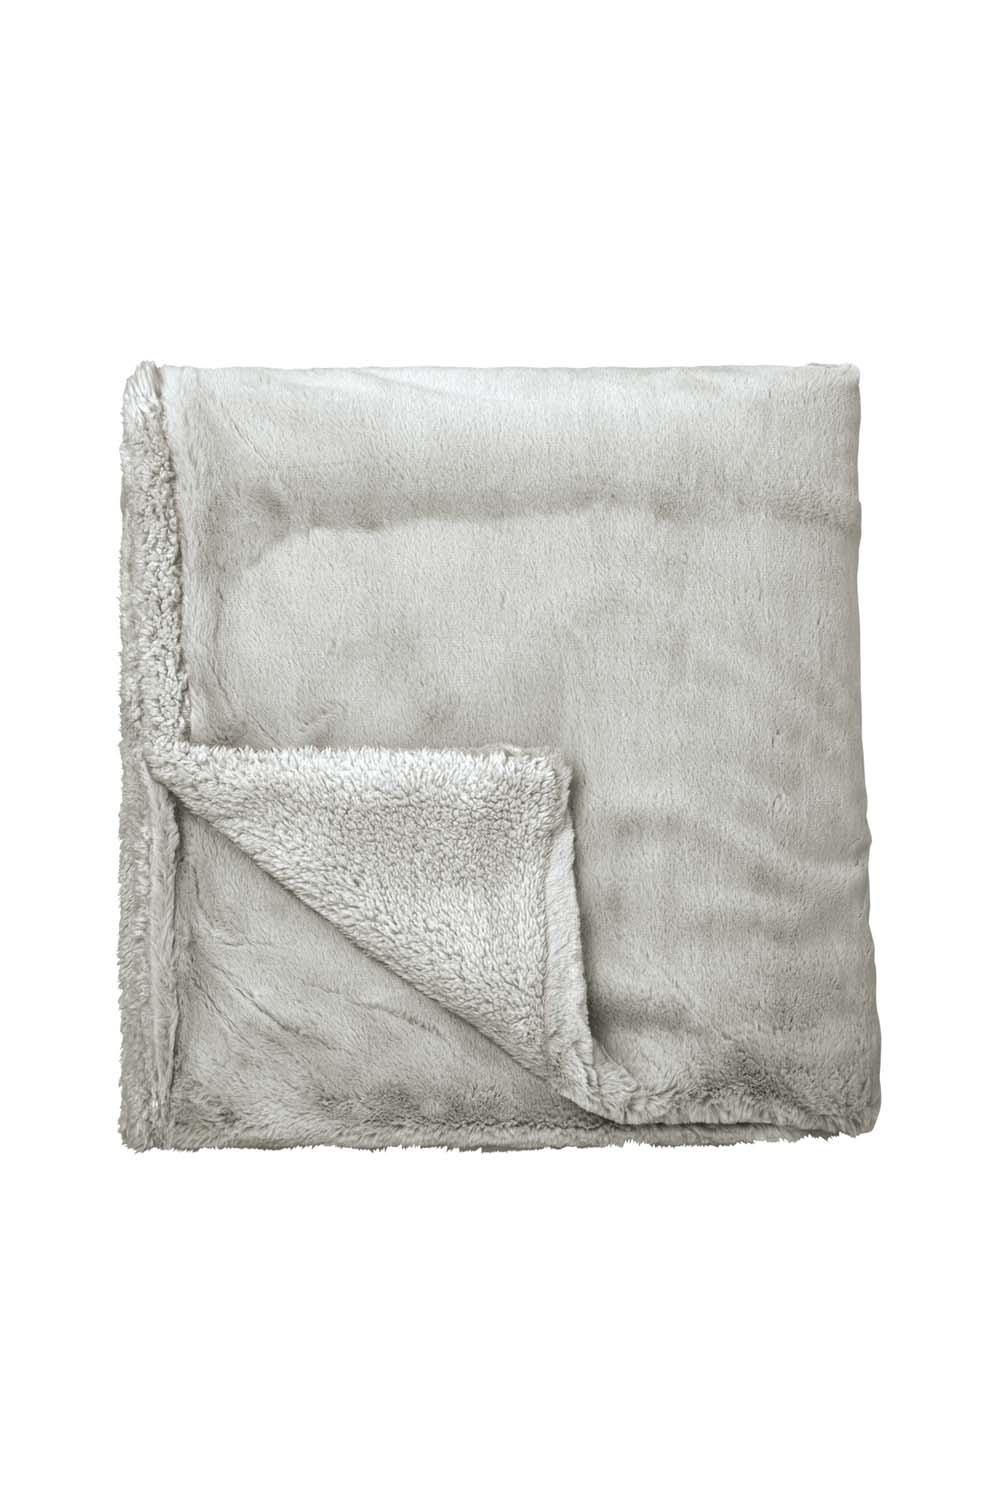 'Skye Faux Fur' Blanket 130X170Cm